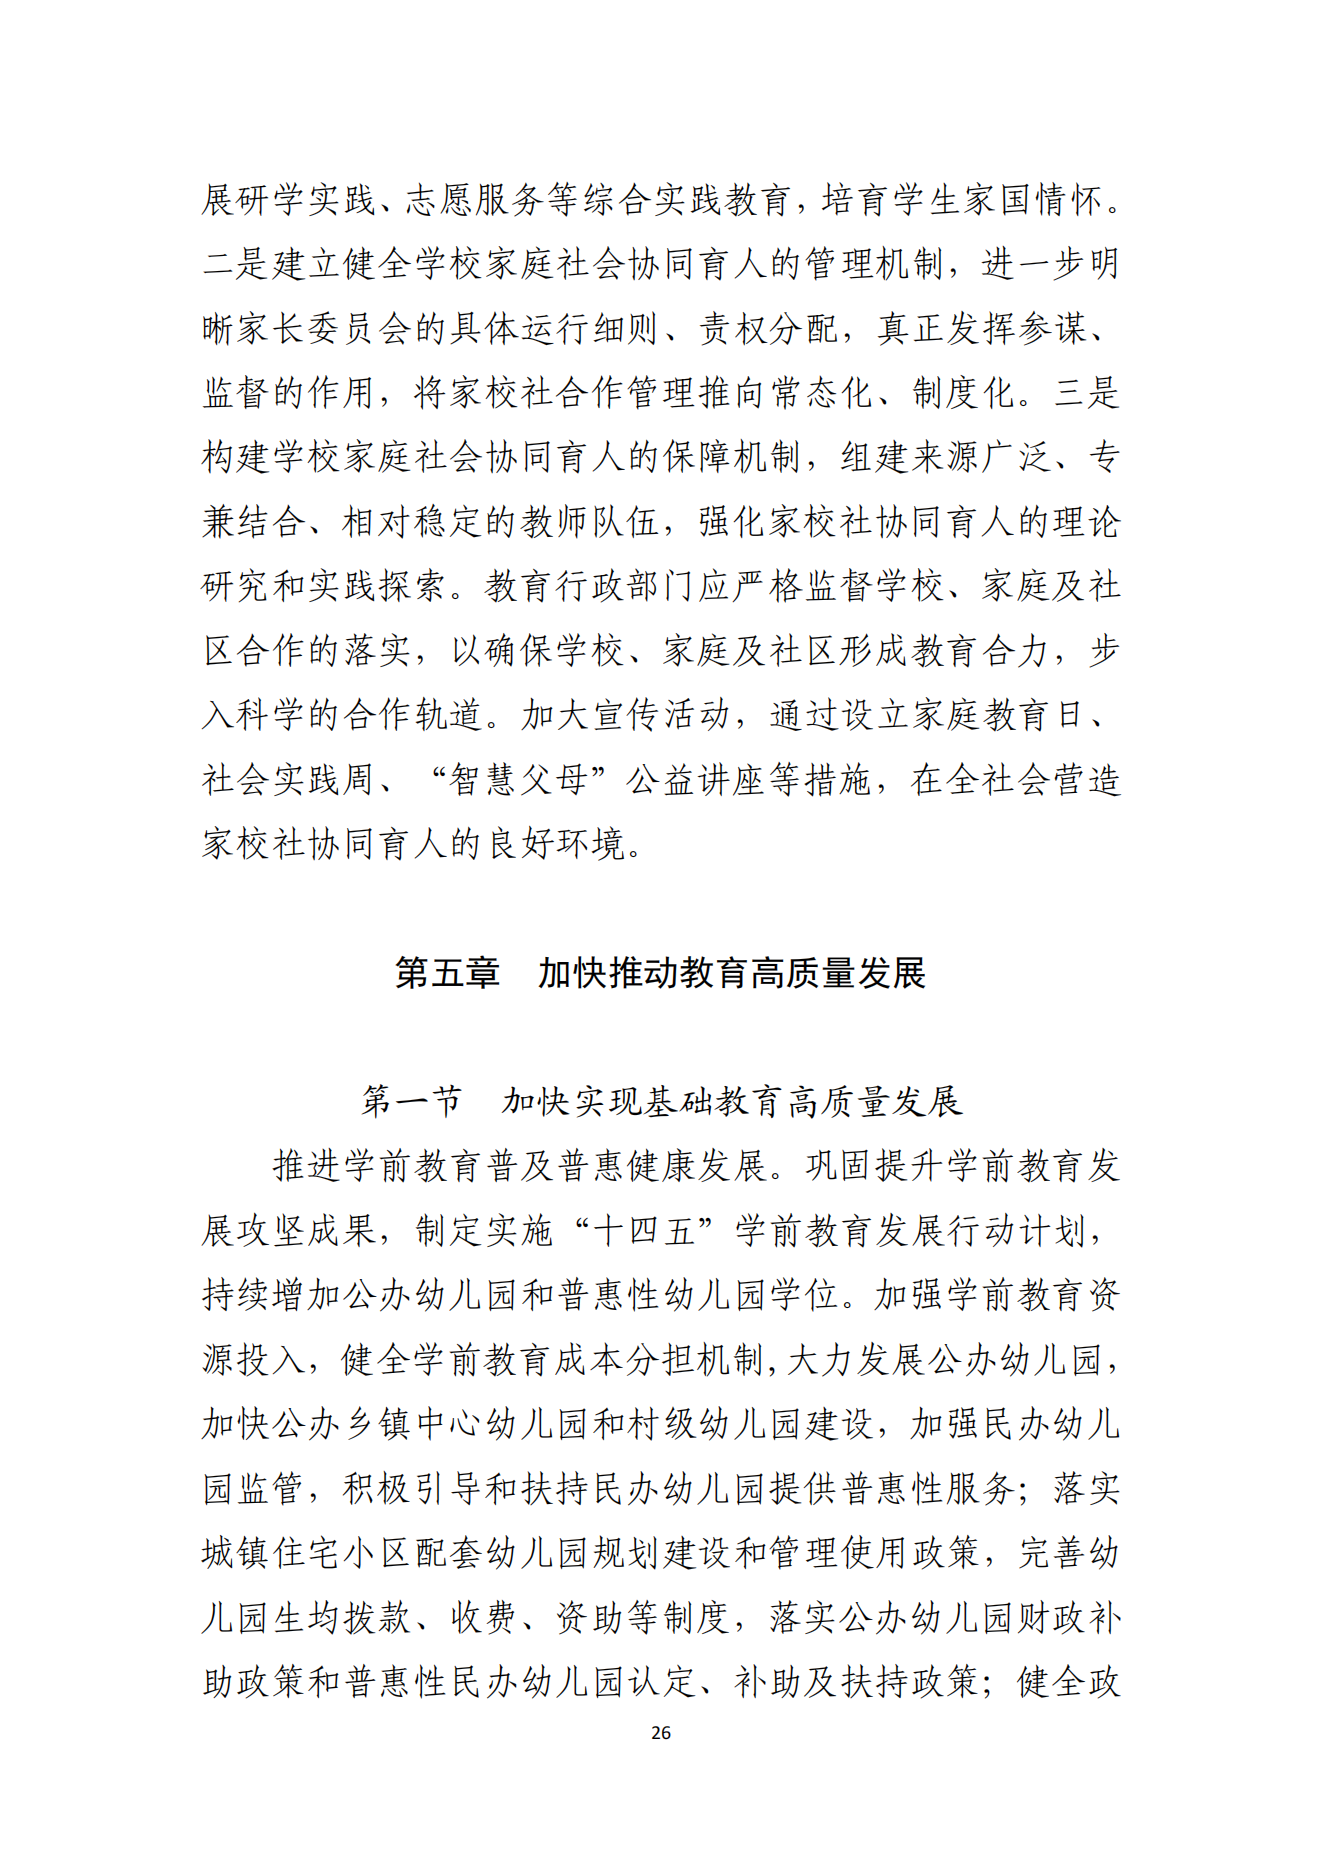 湛江市人民政府办公室关于印发湛江市教育发展“十四五”规划的通知_25.png